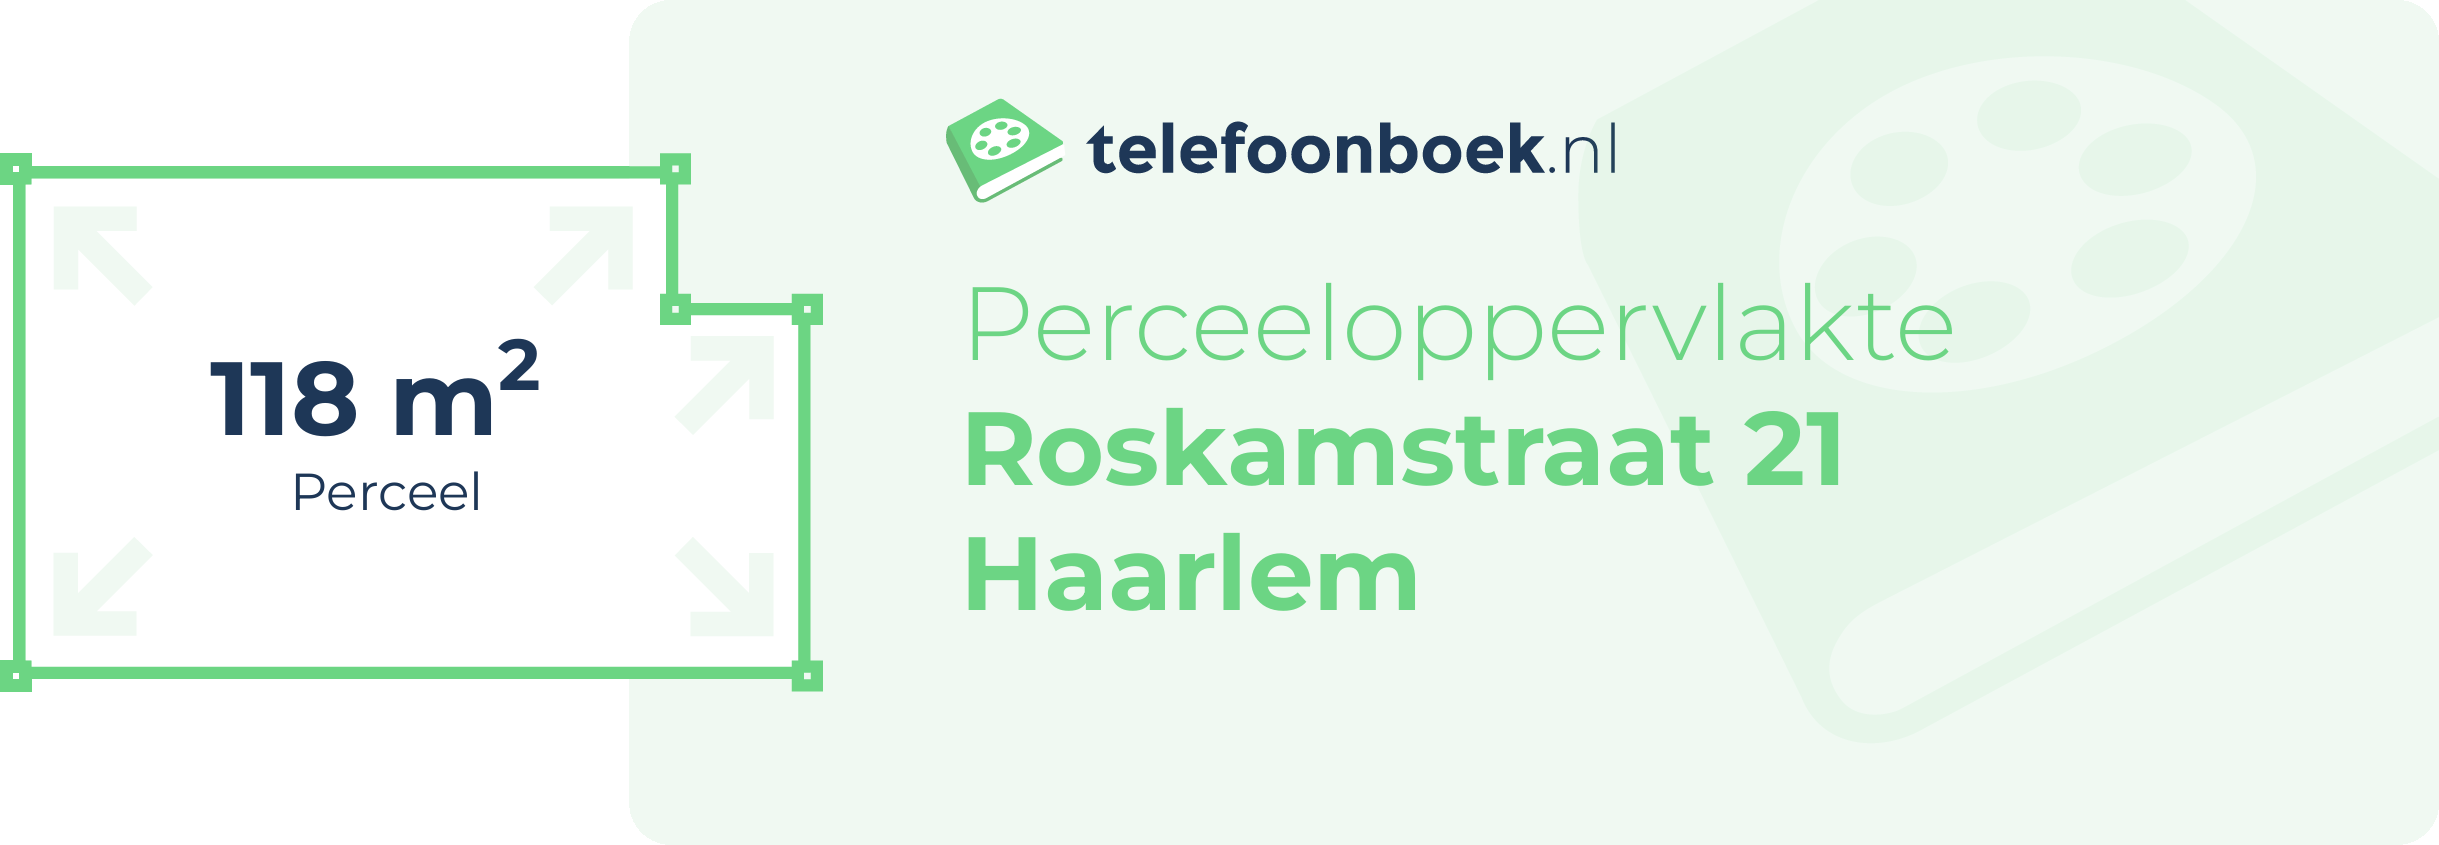 Perceeloppervlakte Roskamstraat 21 Haarlem